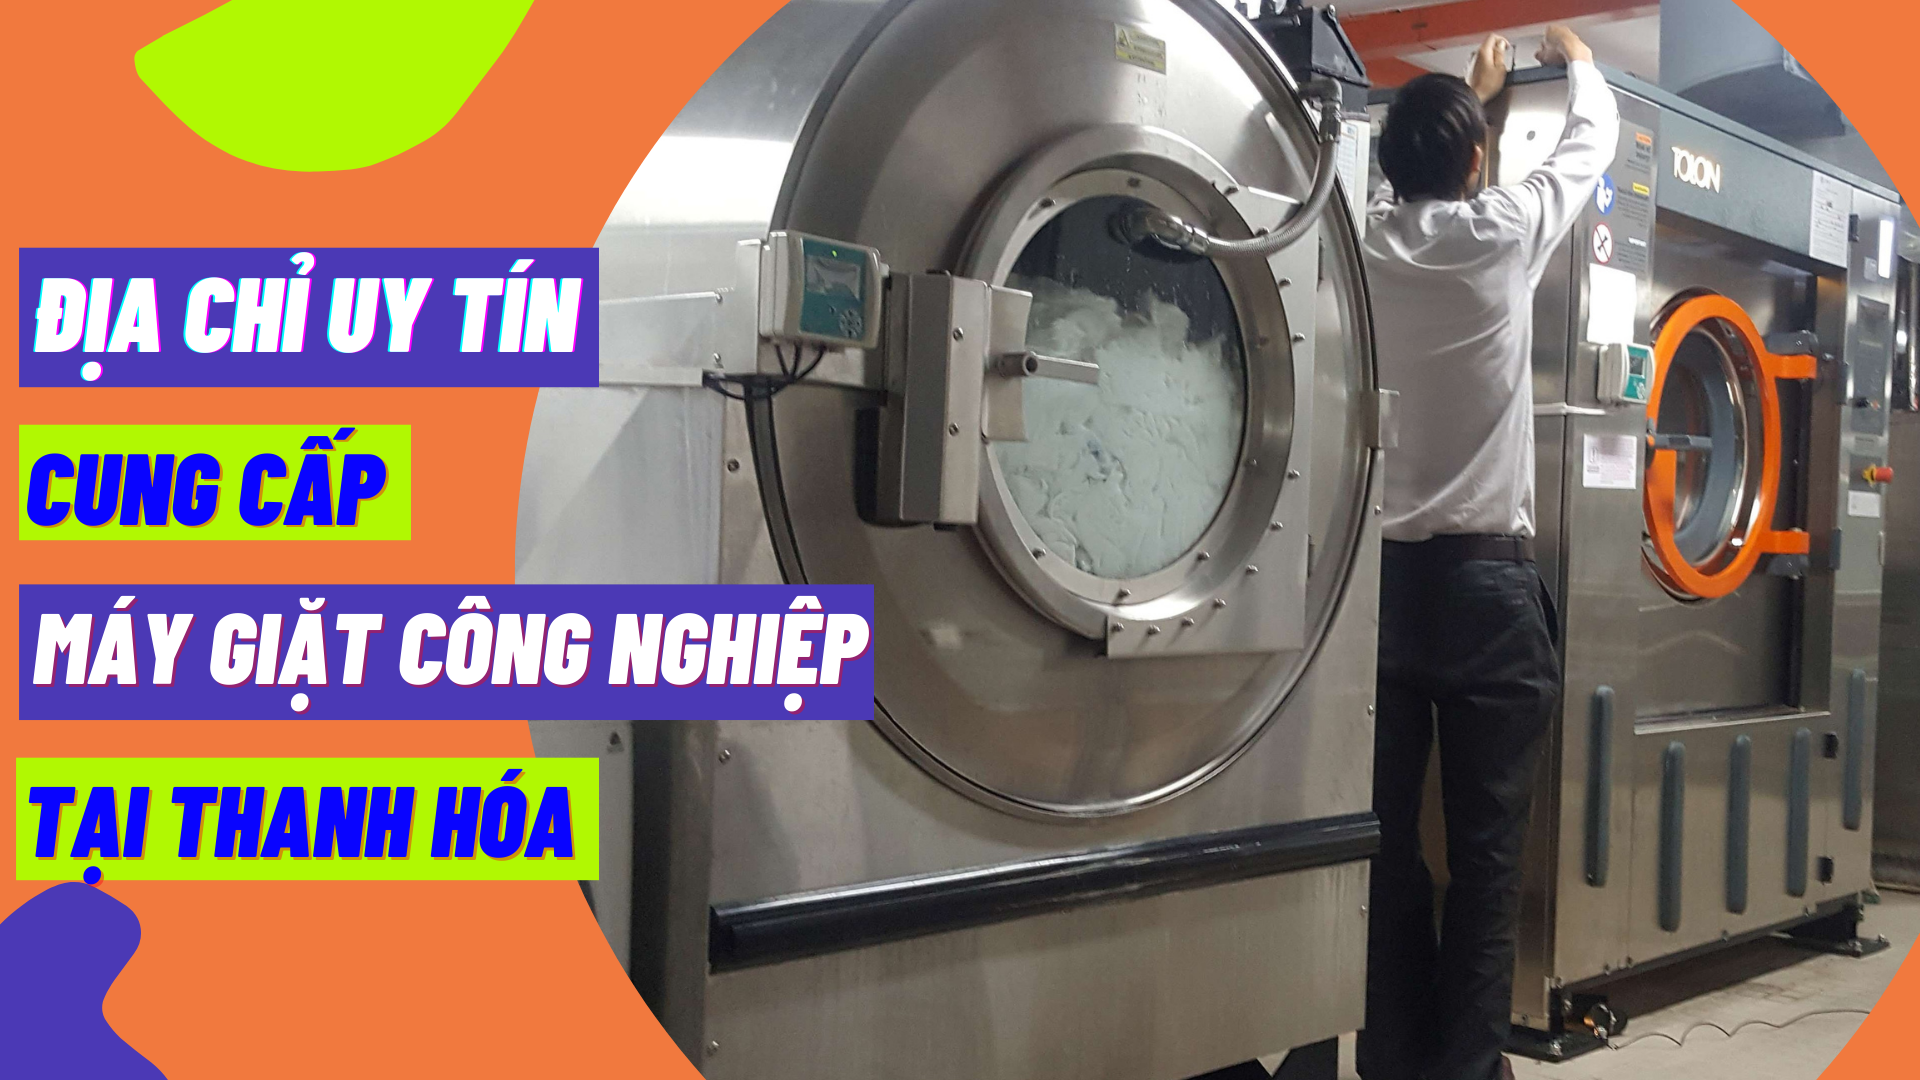 Địa chỉ uy tín cung cấp máy giặt công nghiệp tại Thanh Hóa